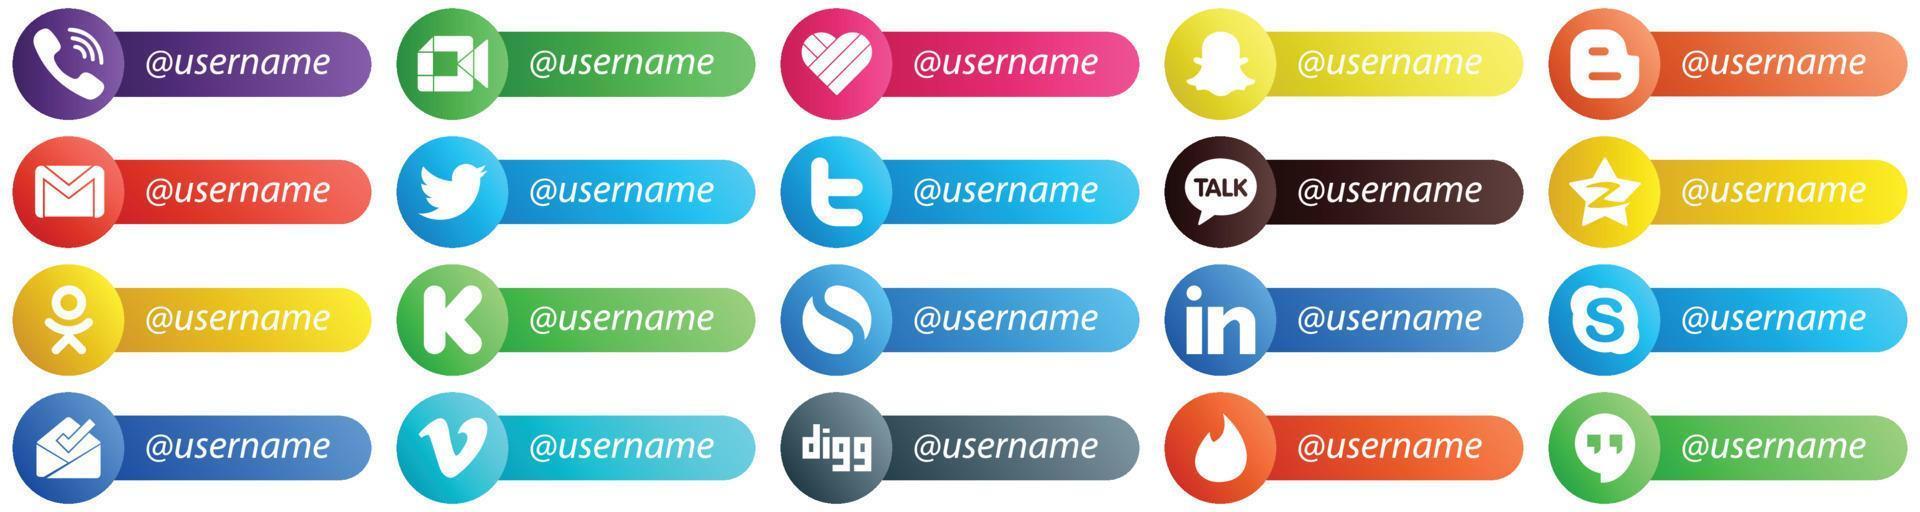 20 íconos de Sígueme para plataformas populares de redes sociales como Tencent. charla kakao. blogger iconos de tweet y correo. minimalista y profesional vector